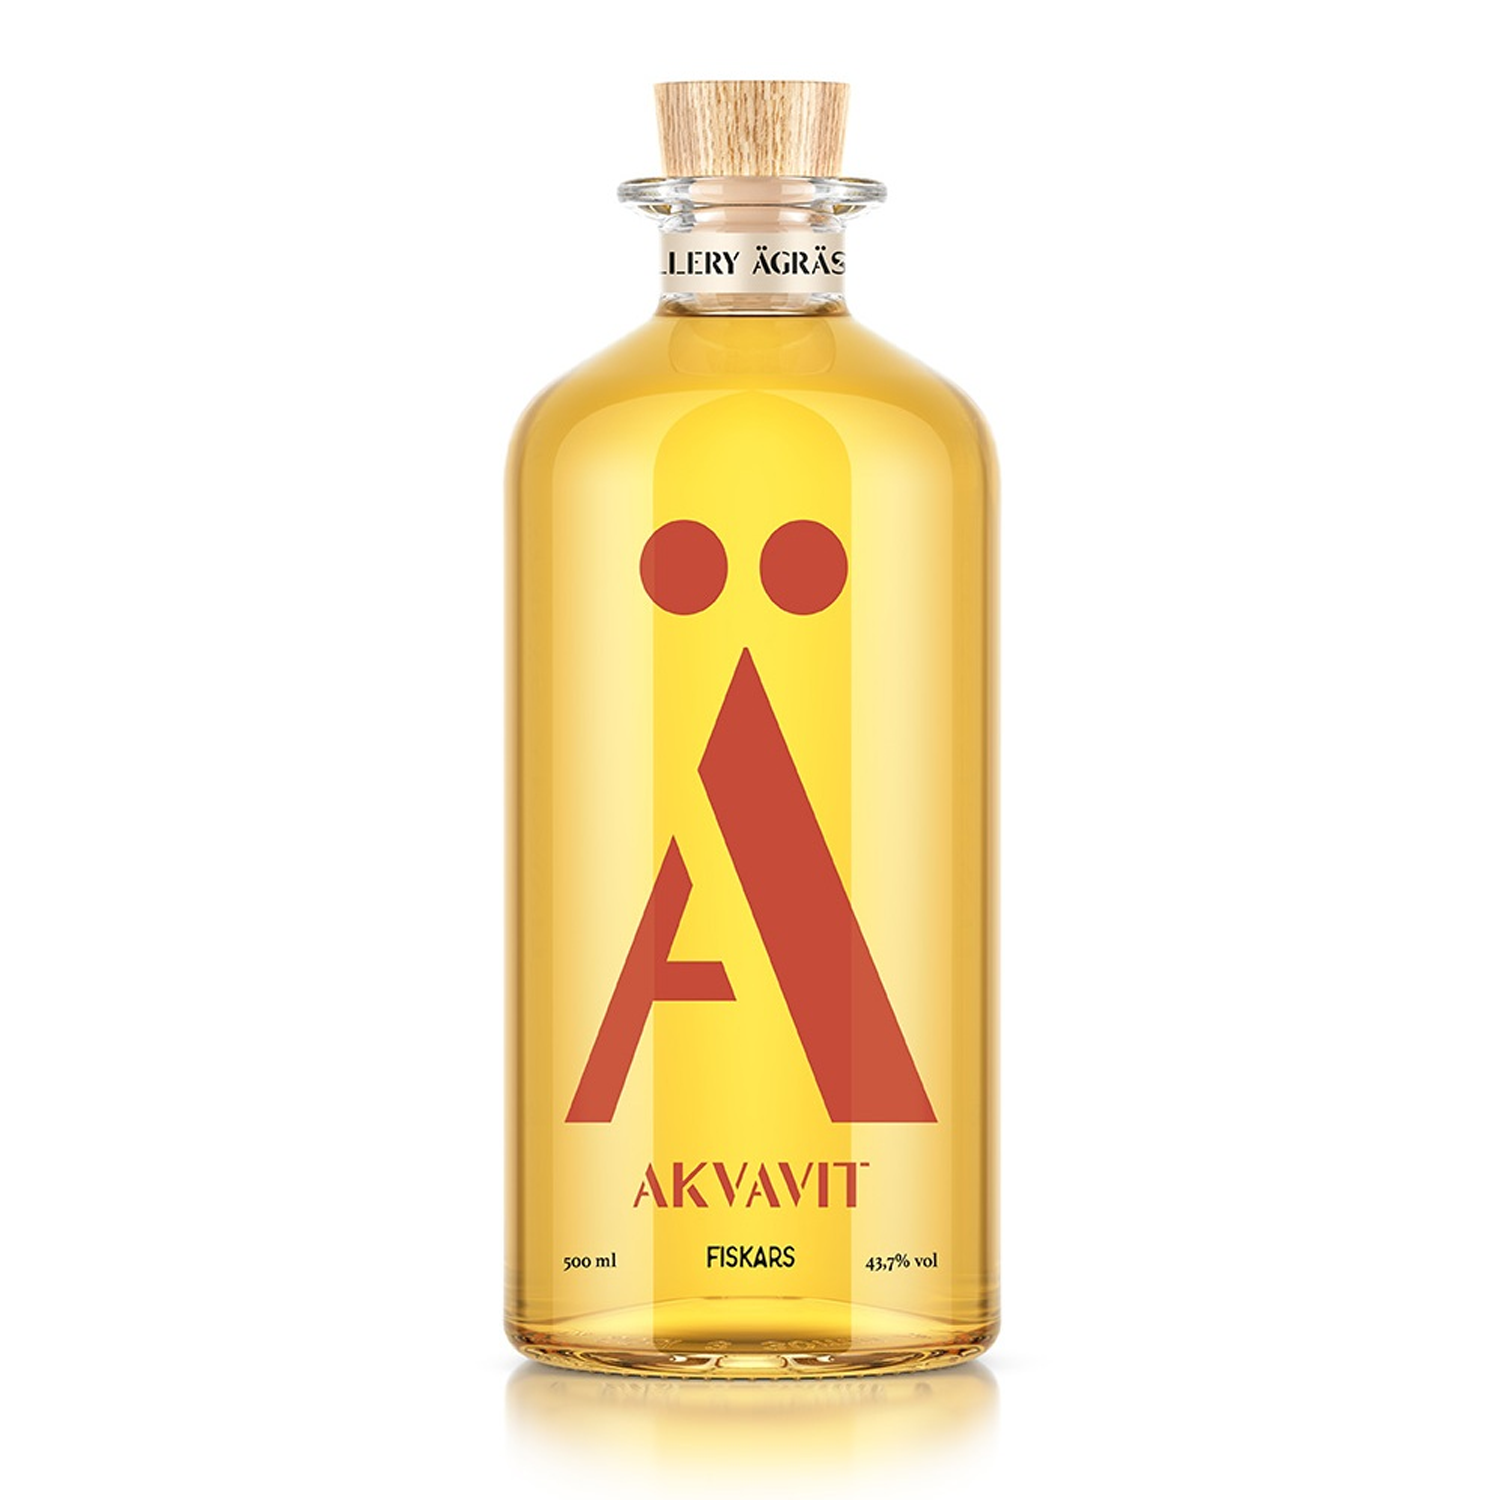 Agras Akvavit